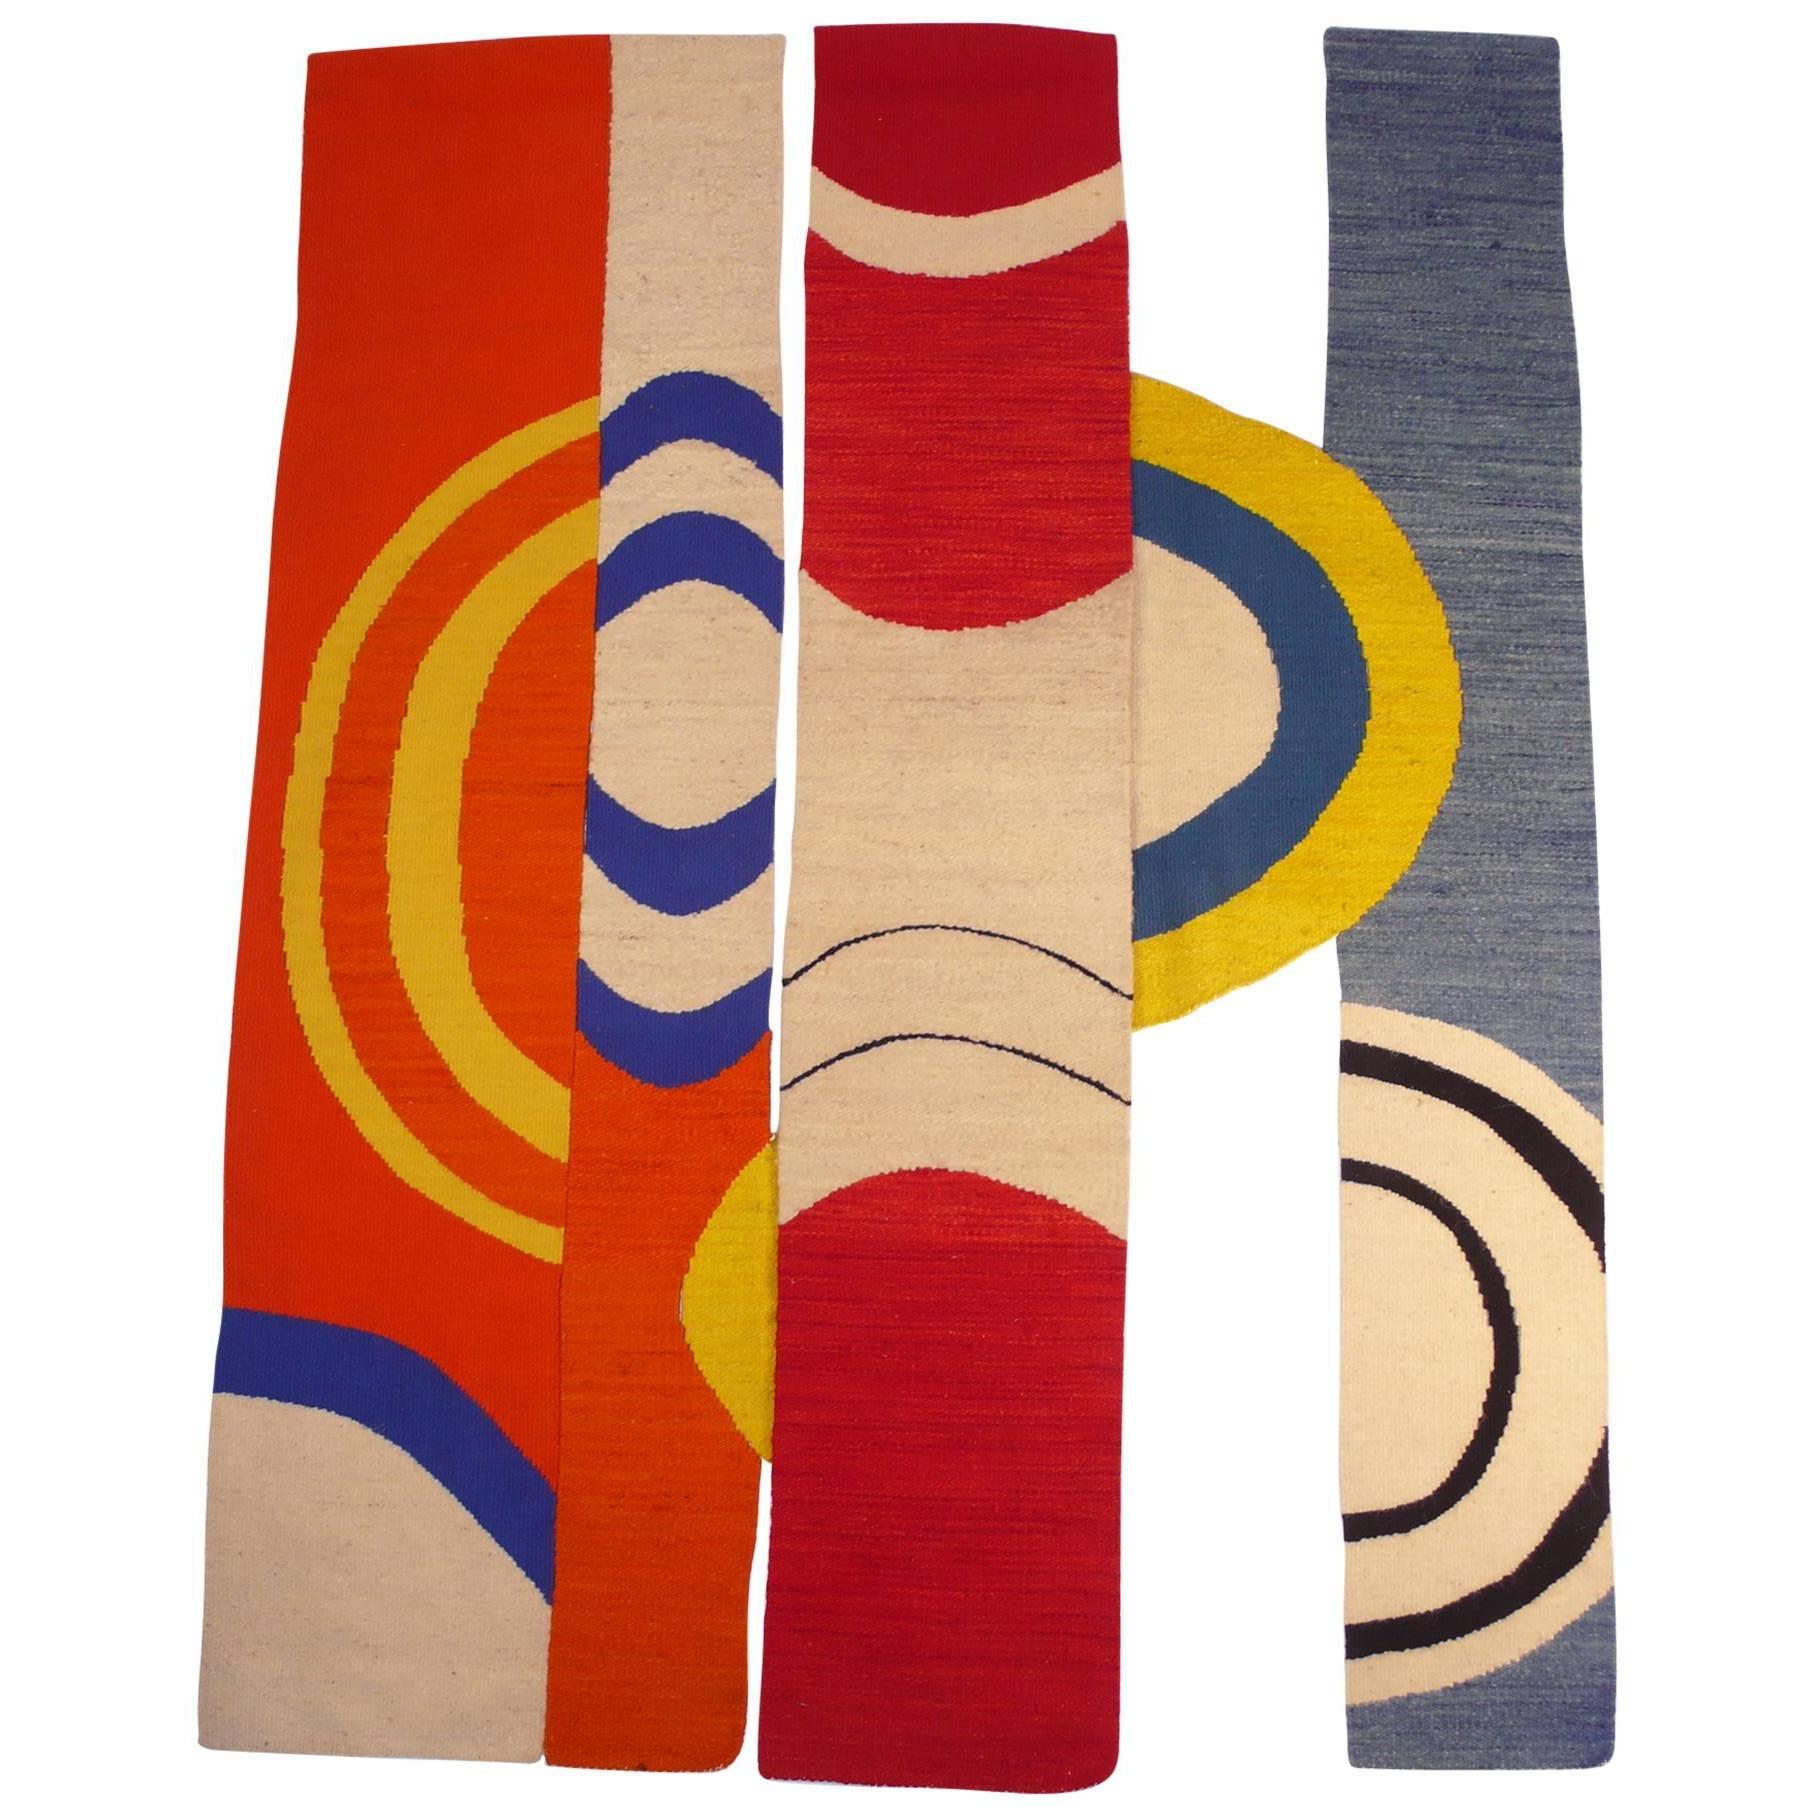 Modernist Handwoven Tapestry